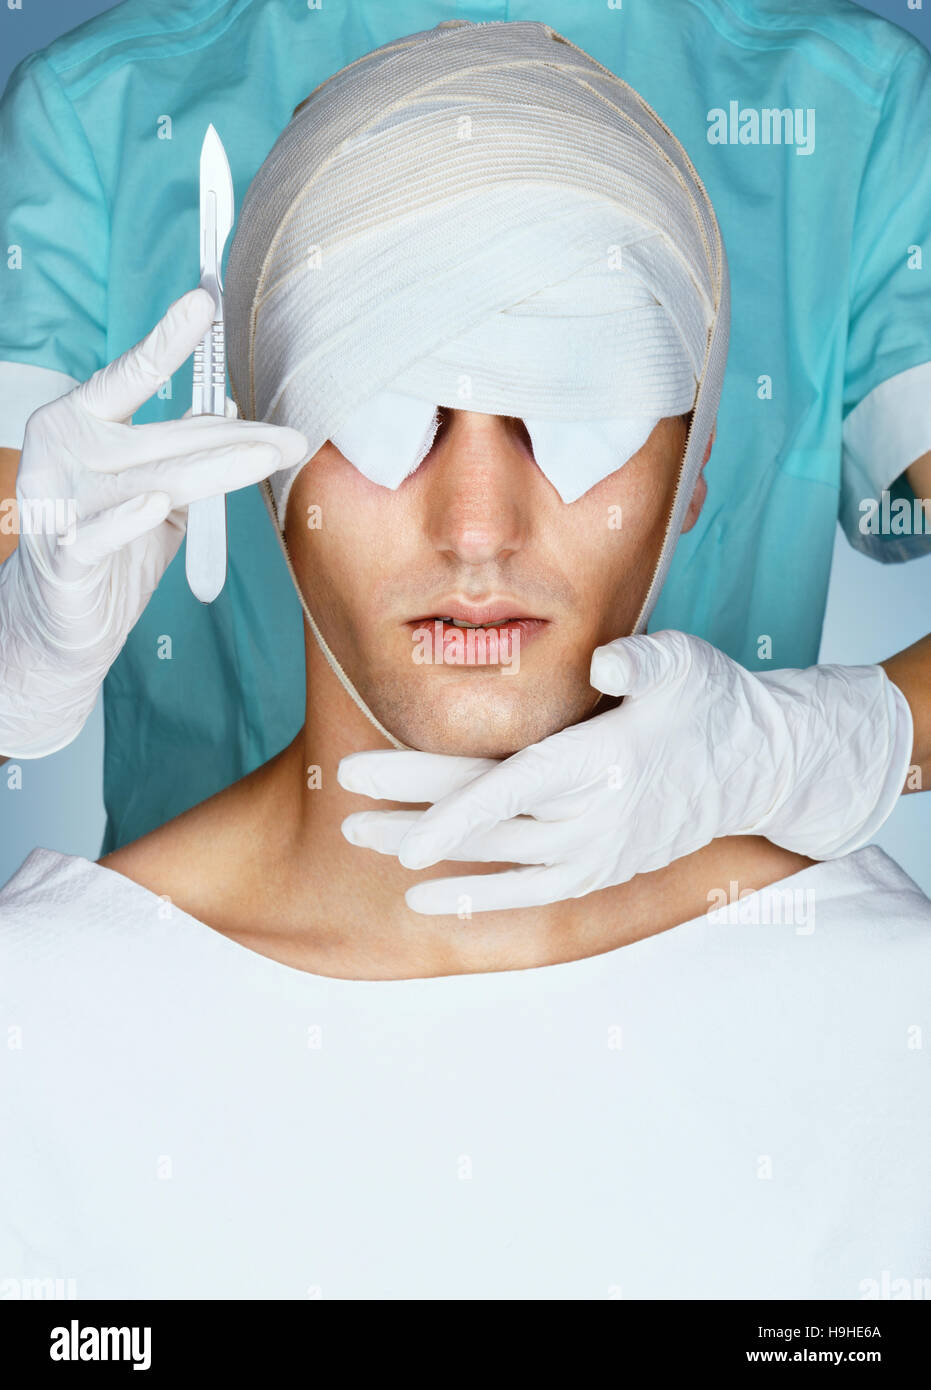 Paciente con vendaje médico sobre sus ojos después de la operación de cosmética. Primer plano del rostro vendado antes de la cirugía plástica. Concepto de belleza. Foto de stock